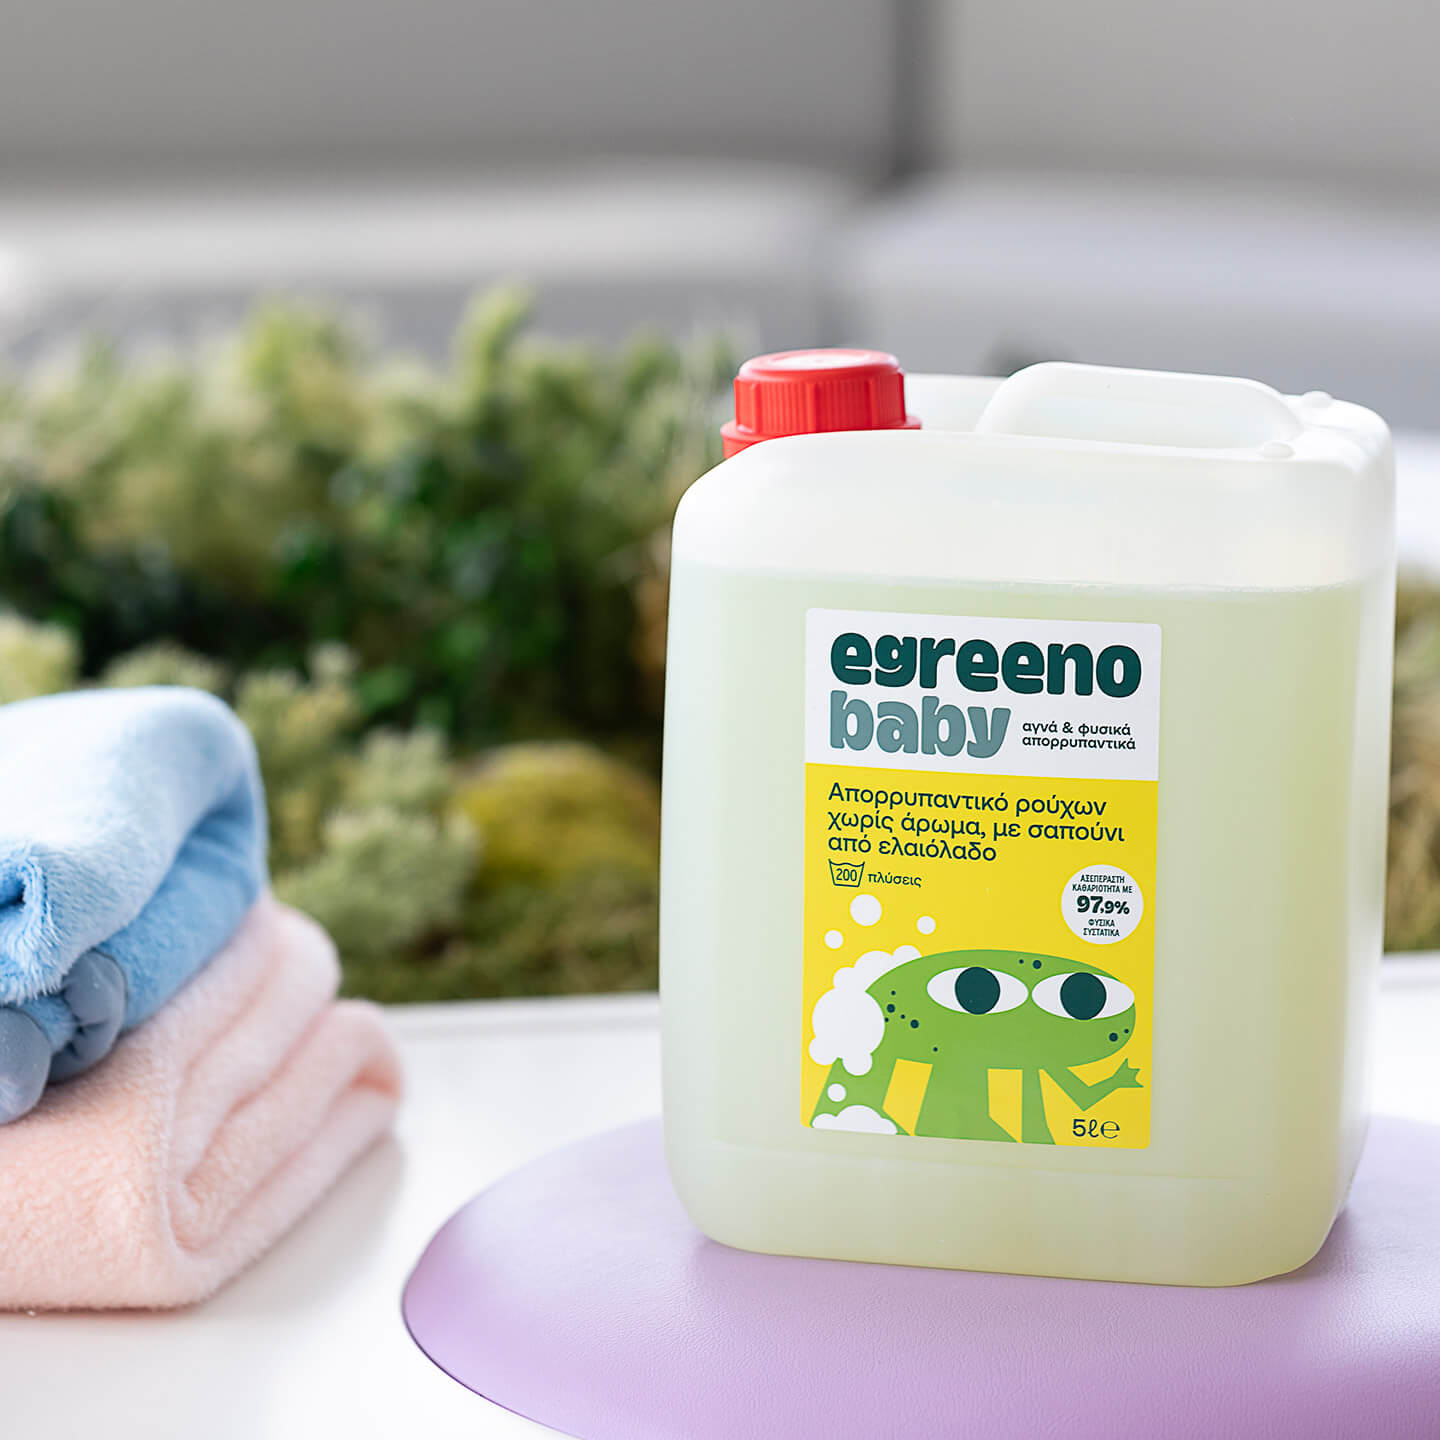 Βρεφικό Απορρυπαντικό ρούχων Egreeno Baby, χωρίς άρωμα / 5L (200 πλύσεις)